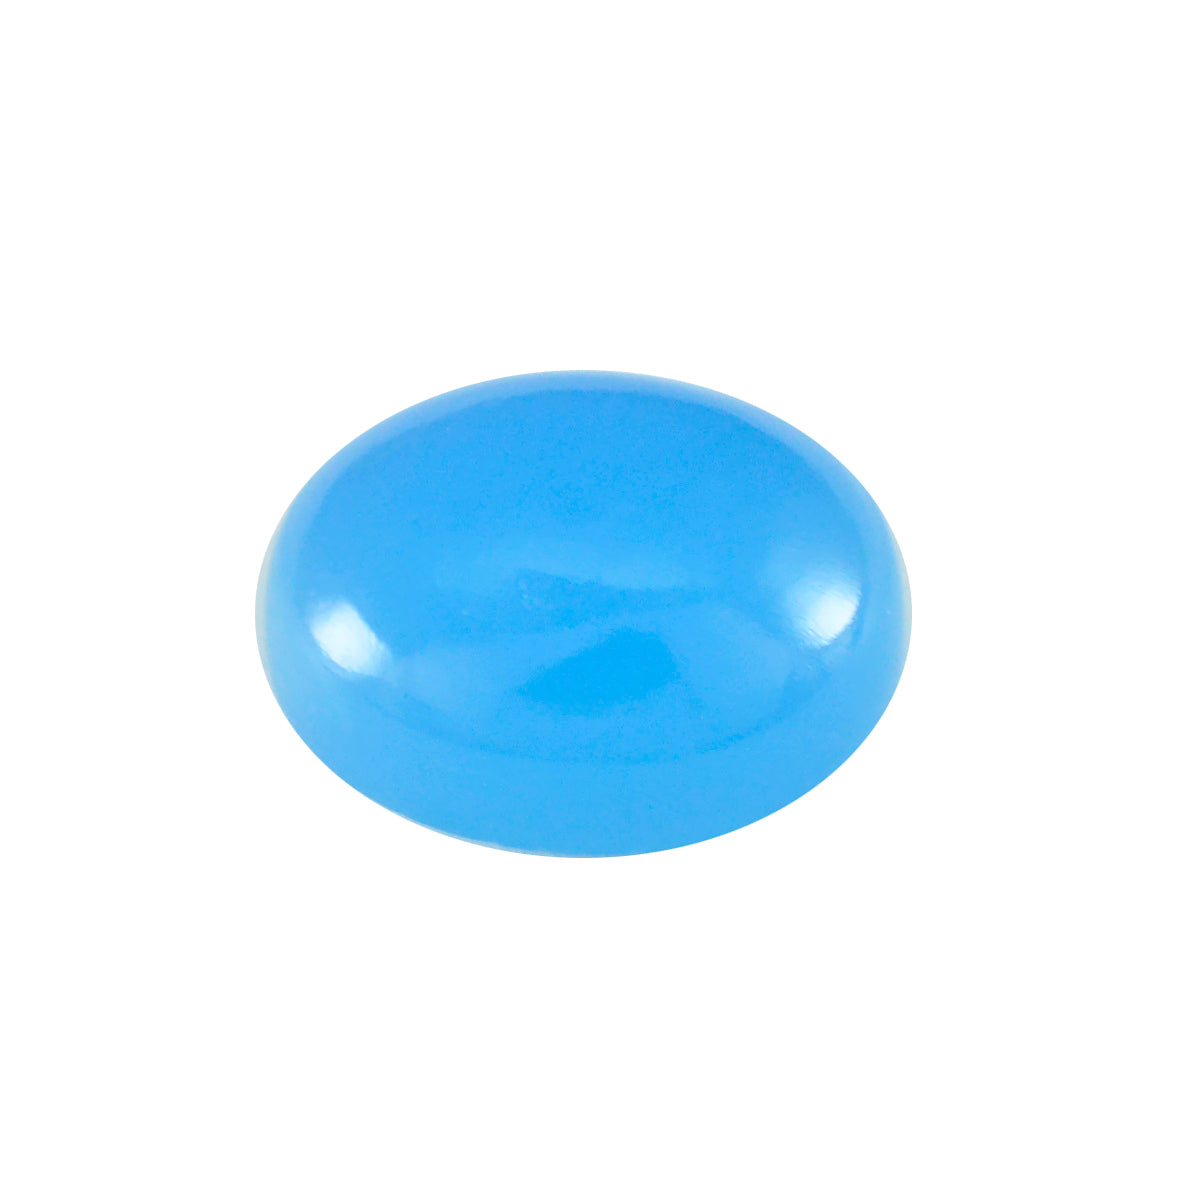 Riyogems 1pc calcédoine bleue cabochon 10x12mm forme ovale beauté qualité gemme